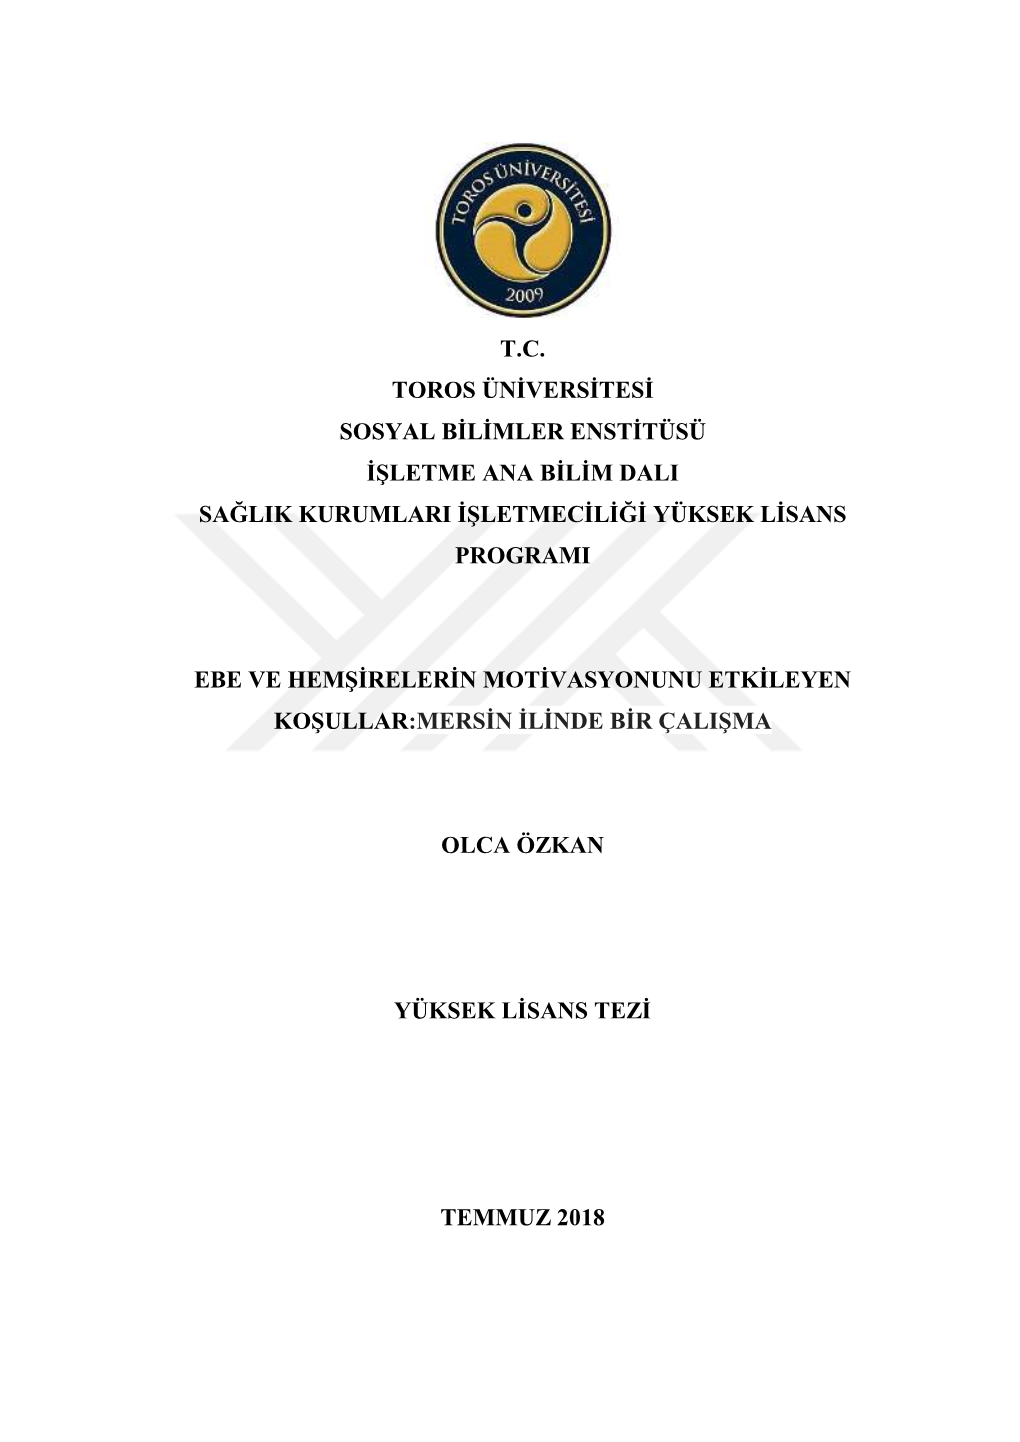 T.C. Toros Ünġversġtesġ Sosyal Bġlġmler Enstġtüsü Ġġletme Ana Bġlġm Dali Sağlik Kurumlari Ġġletmecġlġğġ Yüksek Lġsans Programi